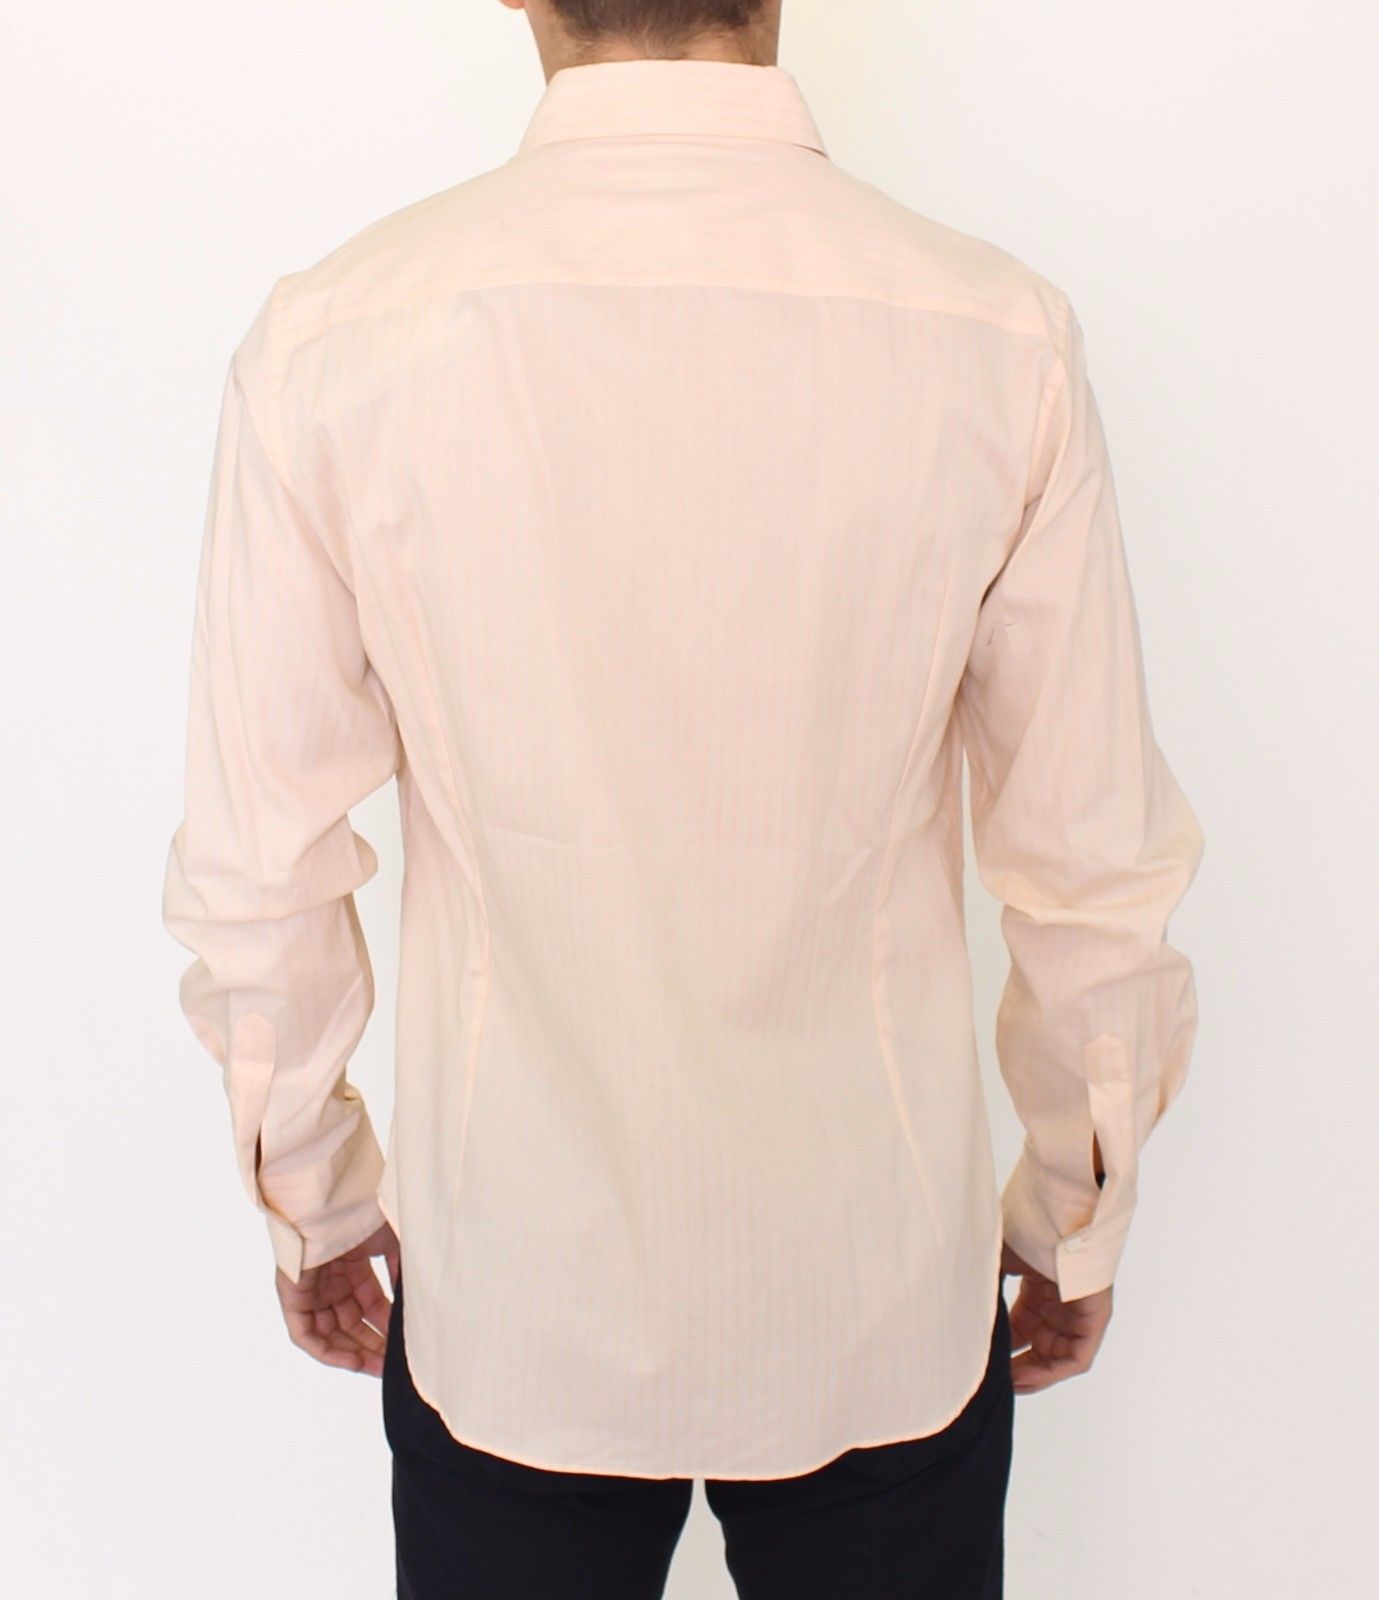 Ermanno Scervino Orange Cotton Striped Casual Shirt Top